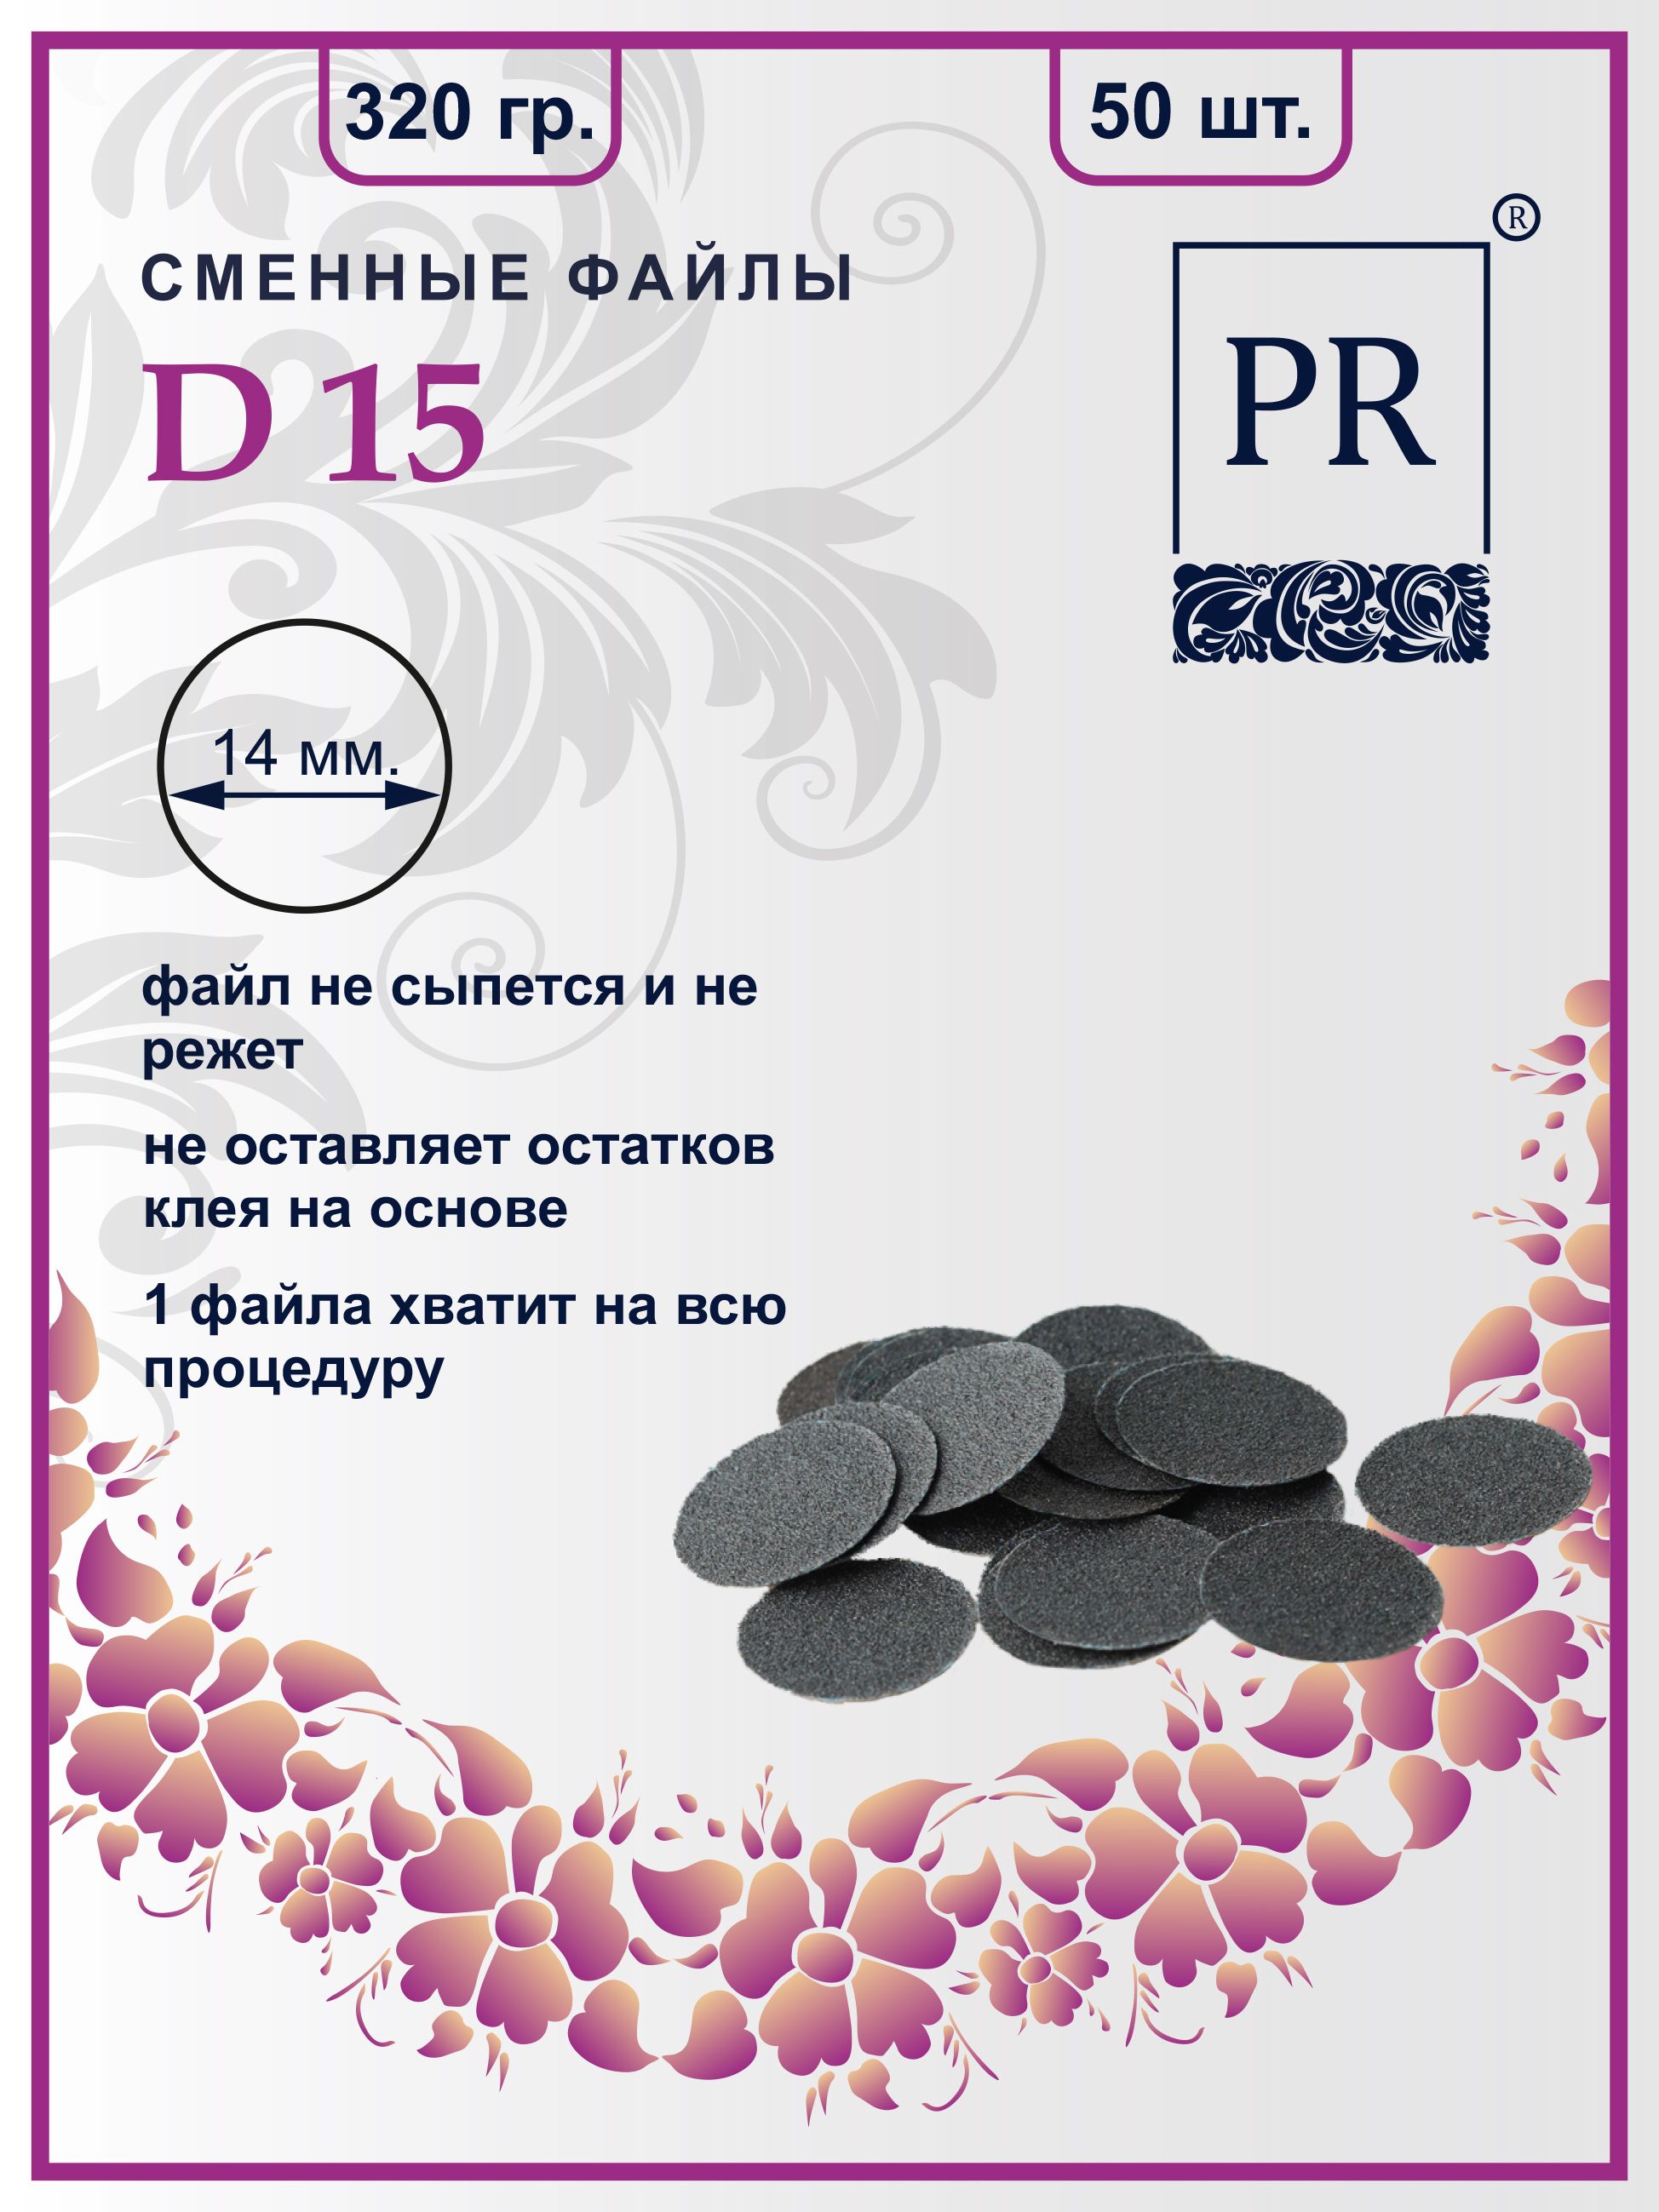 Сменные файлы Pilochki Russia диски для педикюра для диска S 320 грит 50 штук